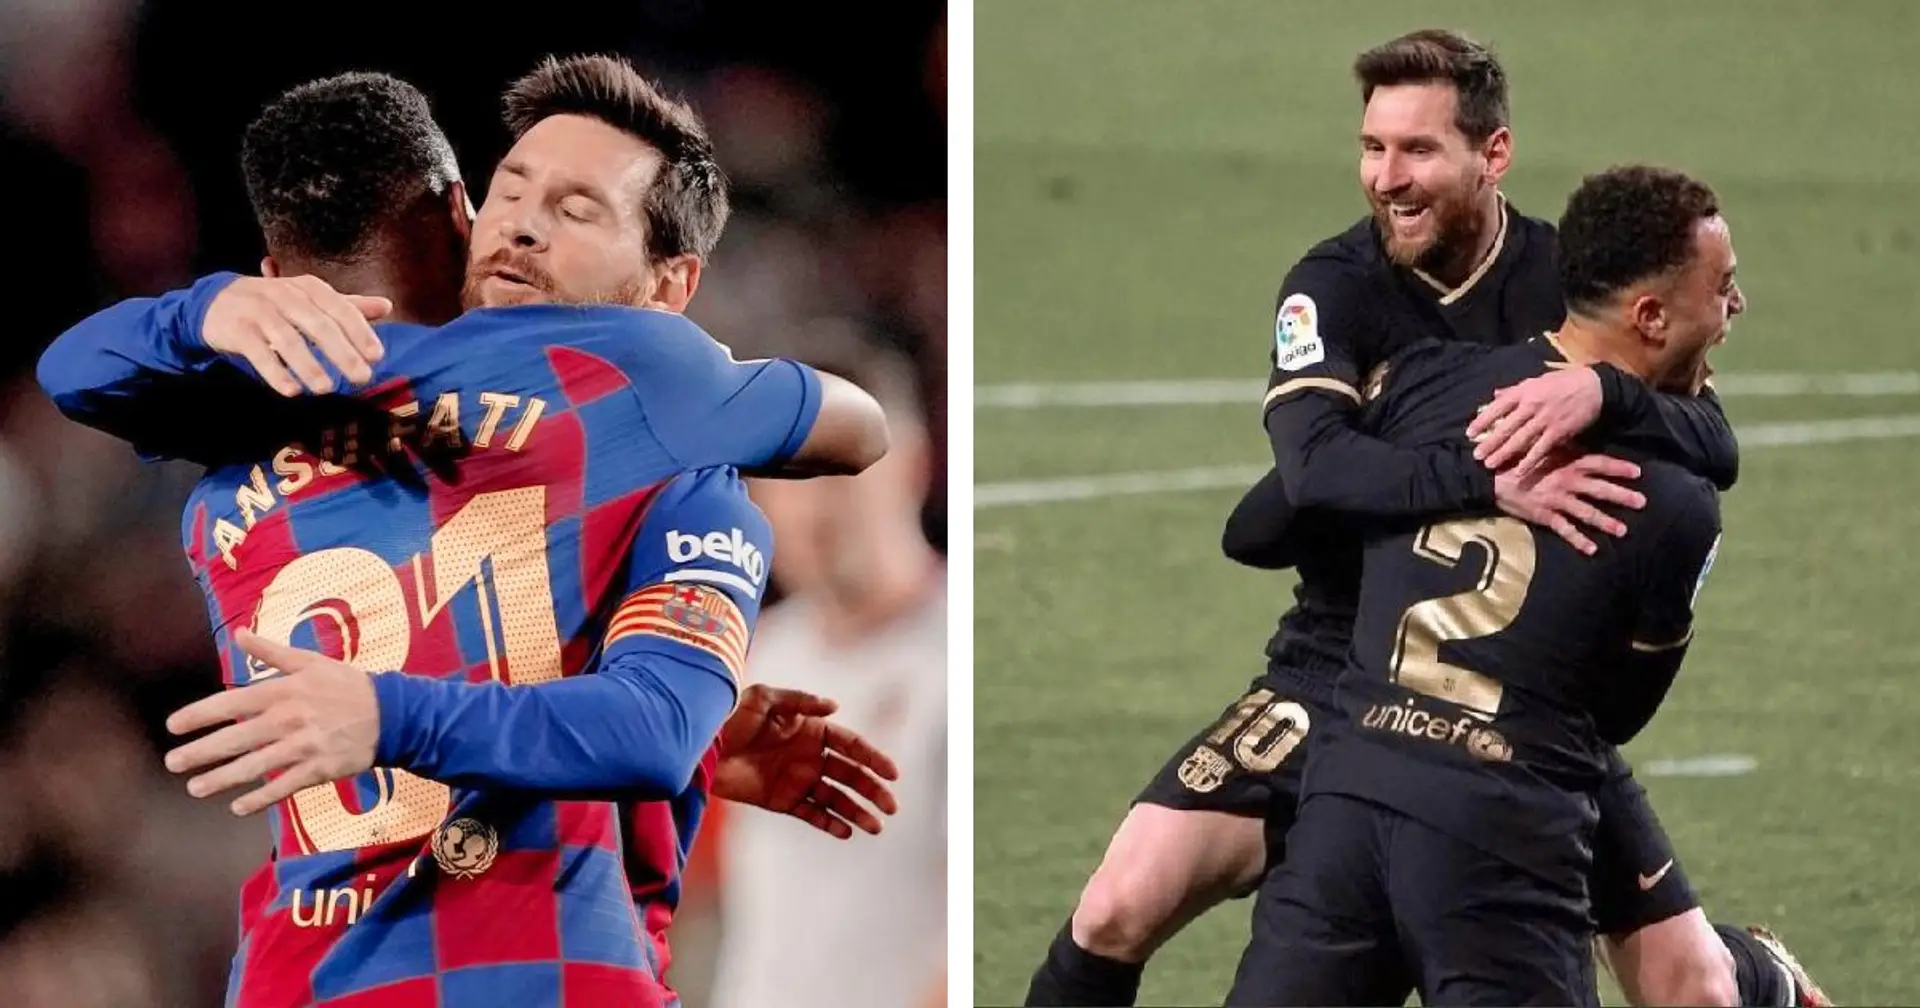 Tout apprendre d'une légende: des images réconfortantes de Messi embrassant les jeunes générations de stars du Barça